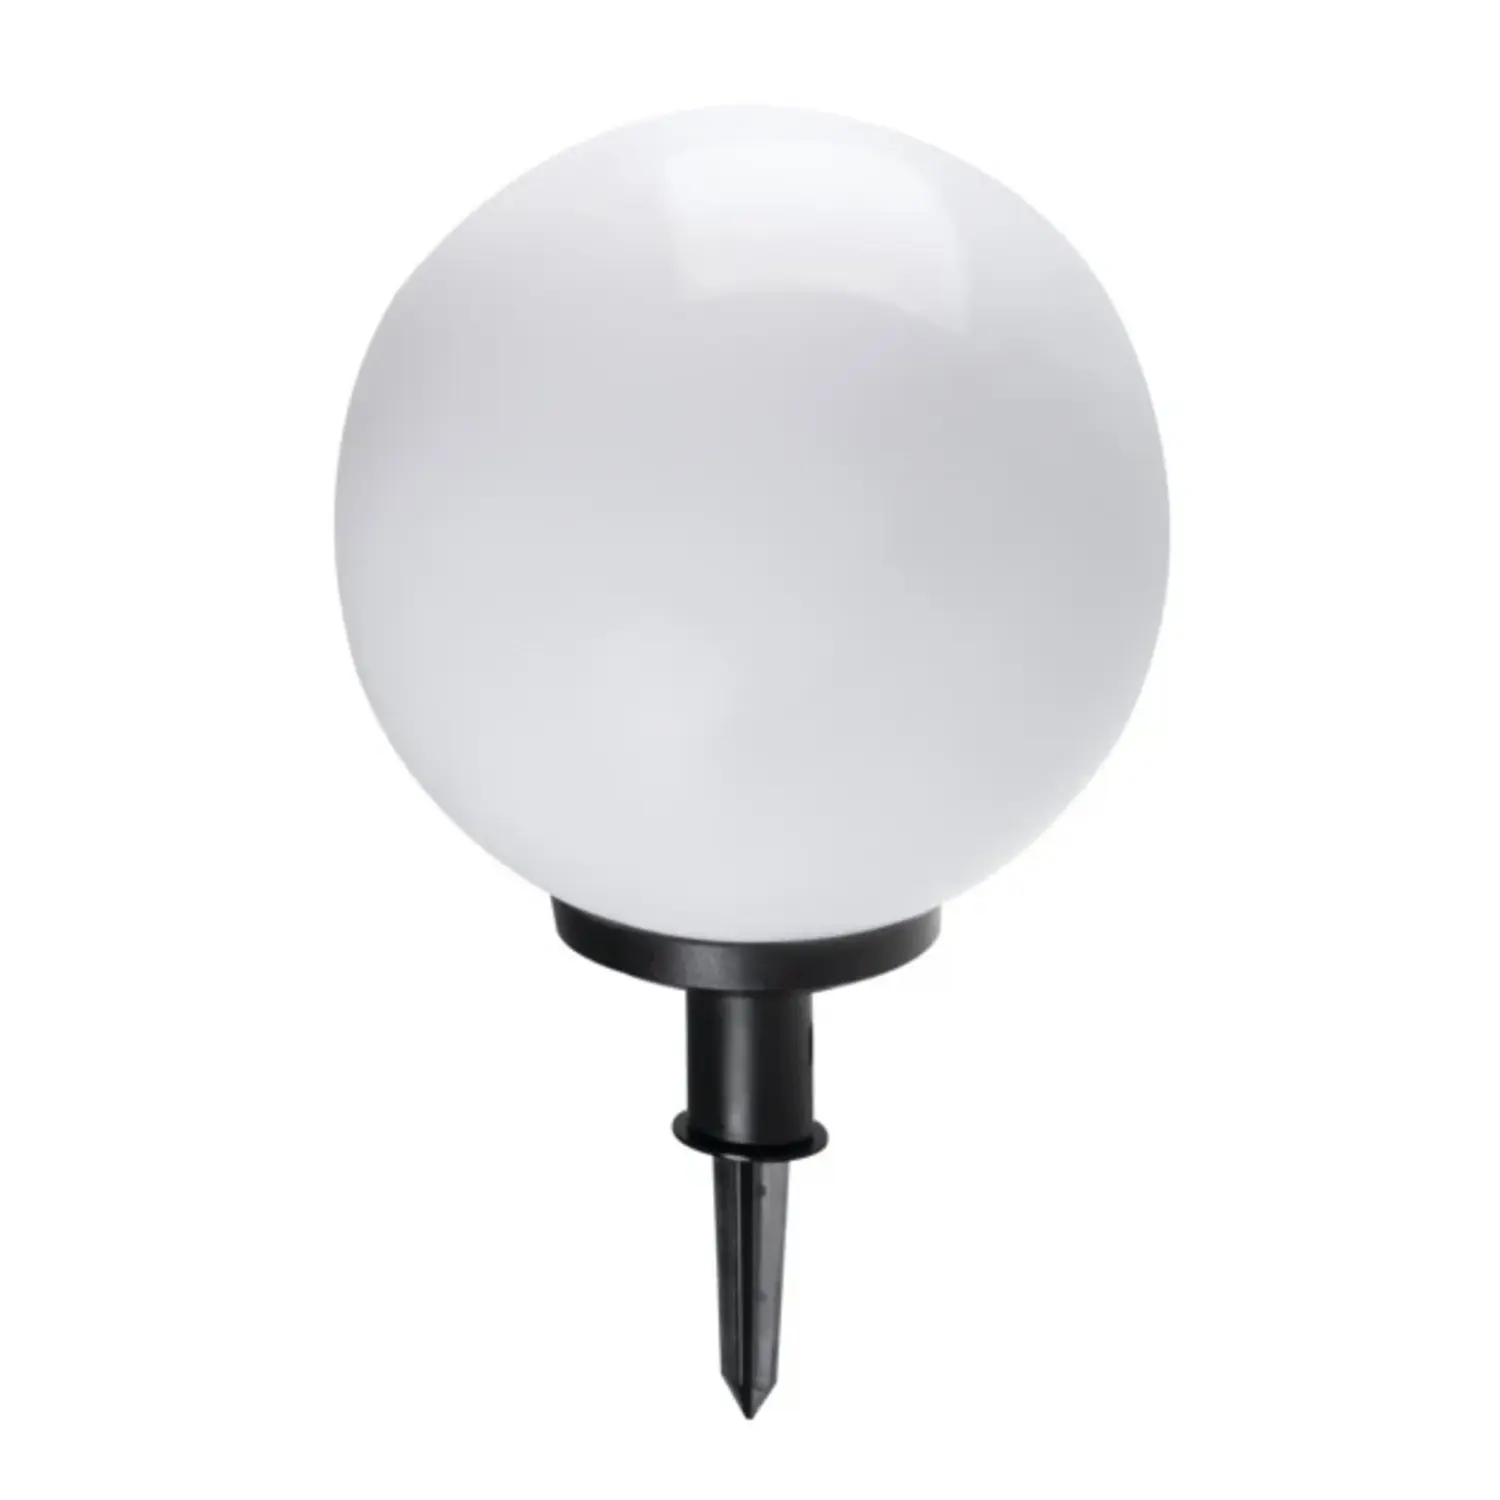 immagine del prodotto lampada da giardino globo con picchetto IP44 esterno E27 CE bianco 470 mm 220-240 volt kan 23512